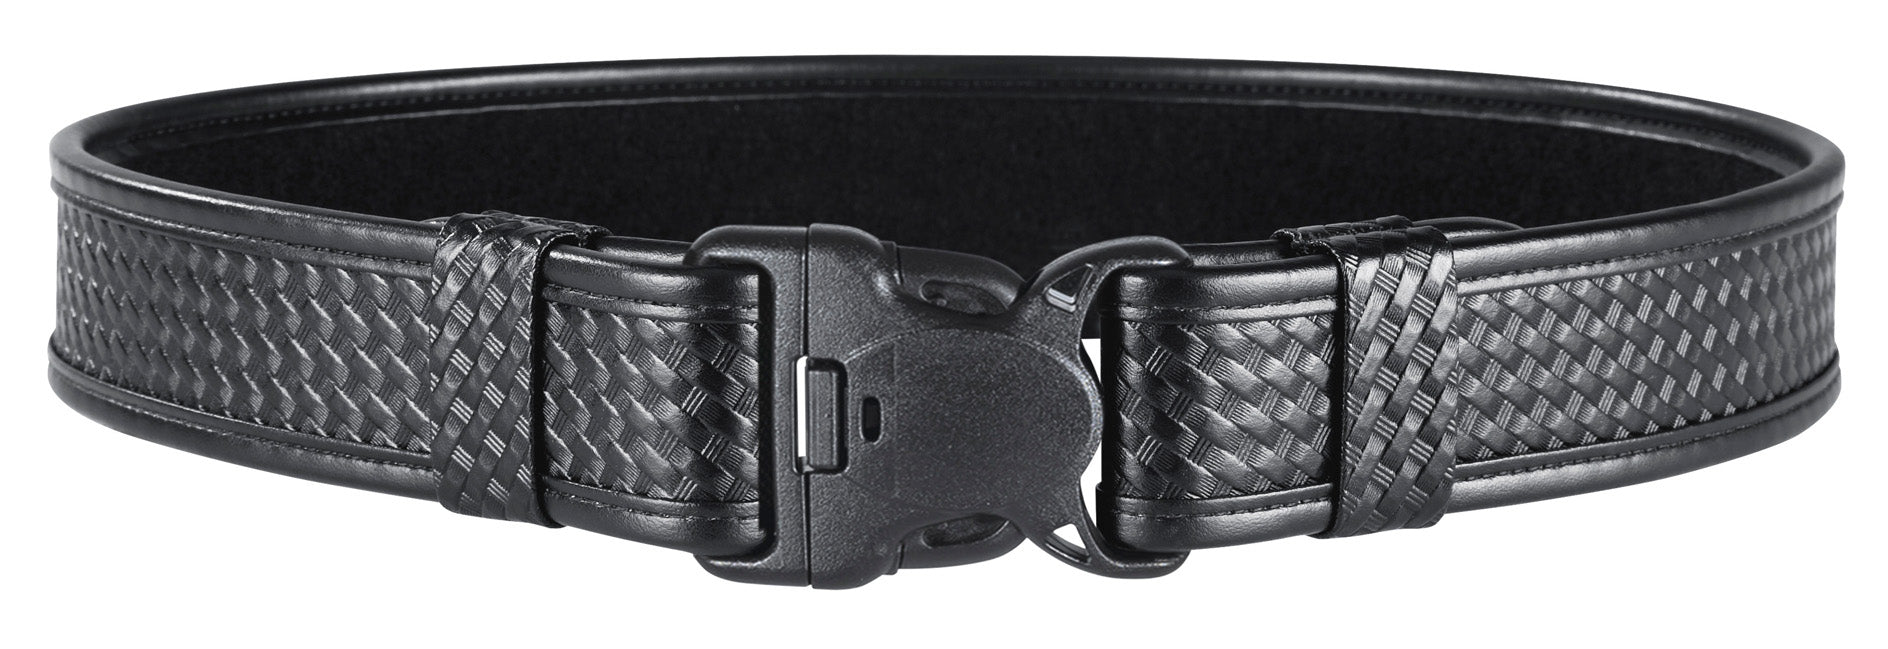 7980 - Duty Belt w/Tri-Release™ Buckle, 2 (50mm)